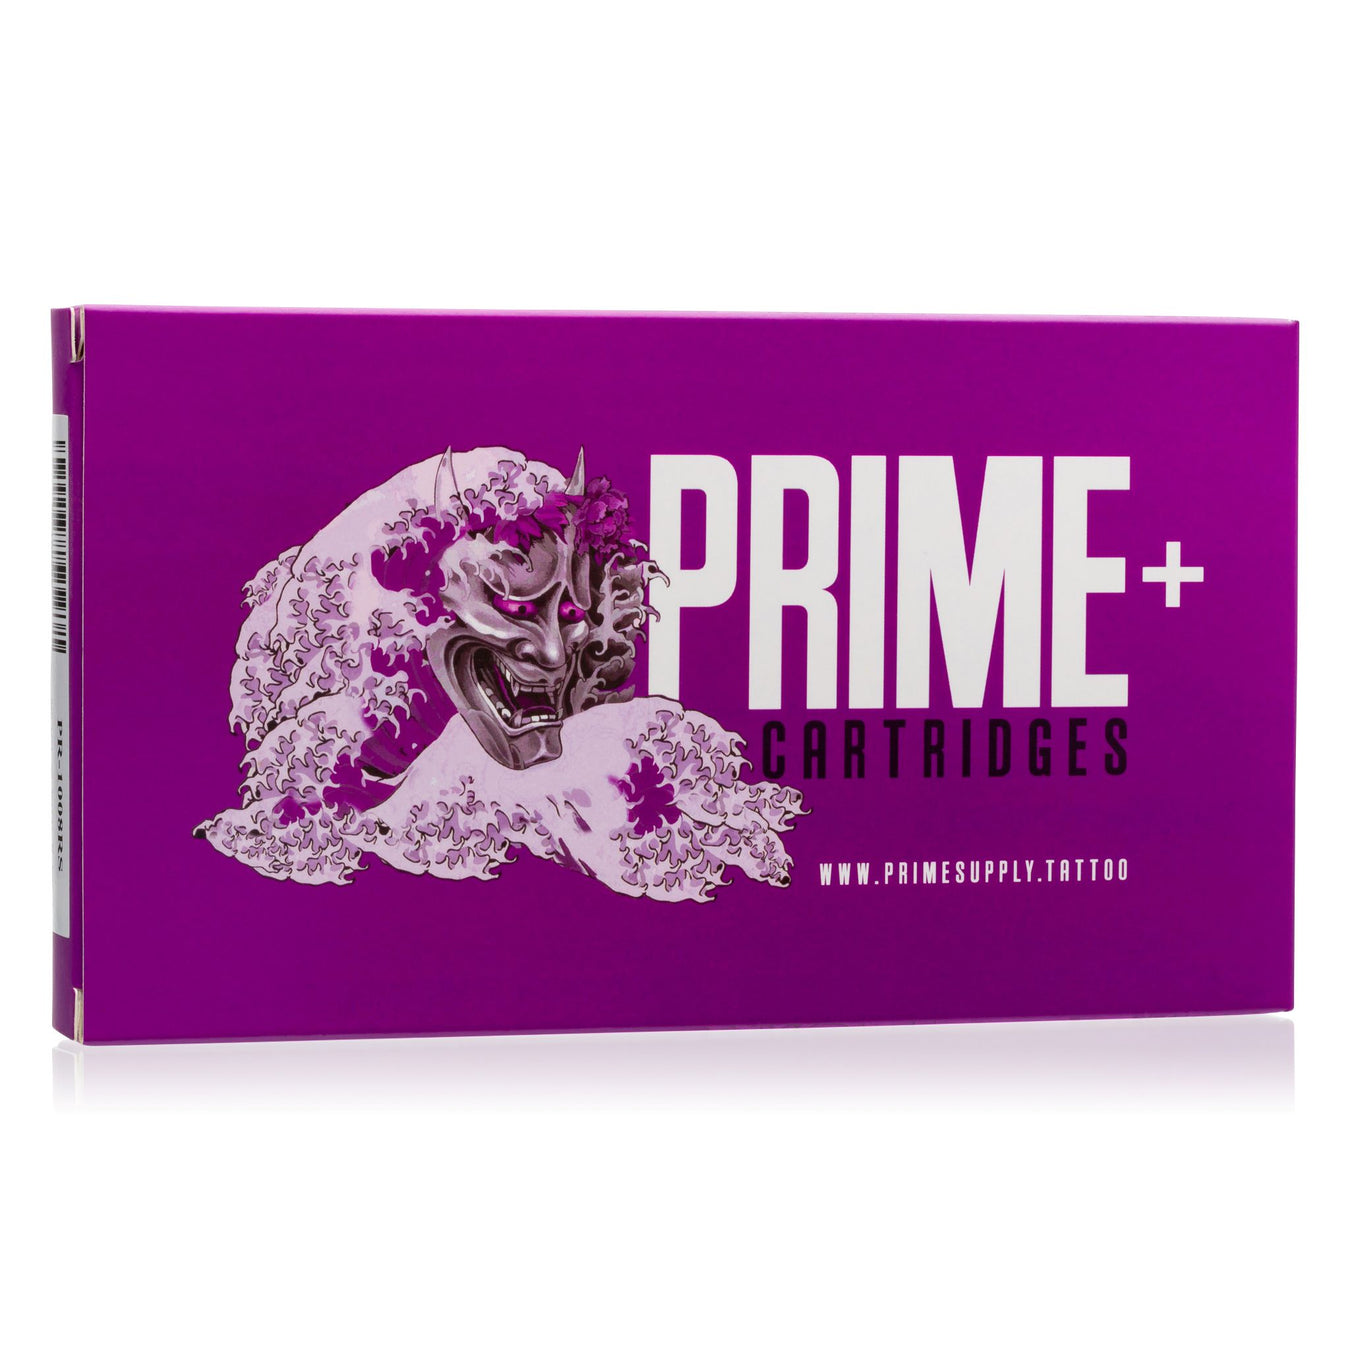 Prime + Cartridges